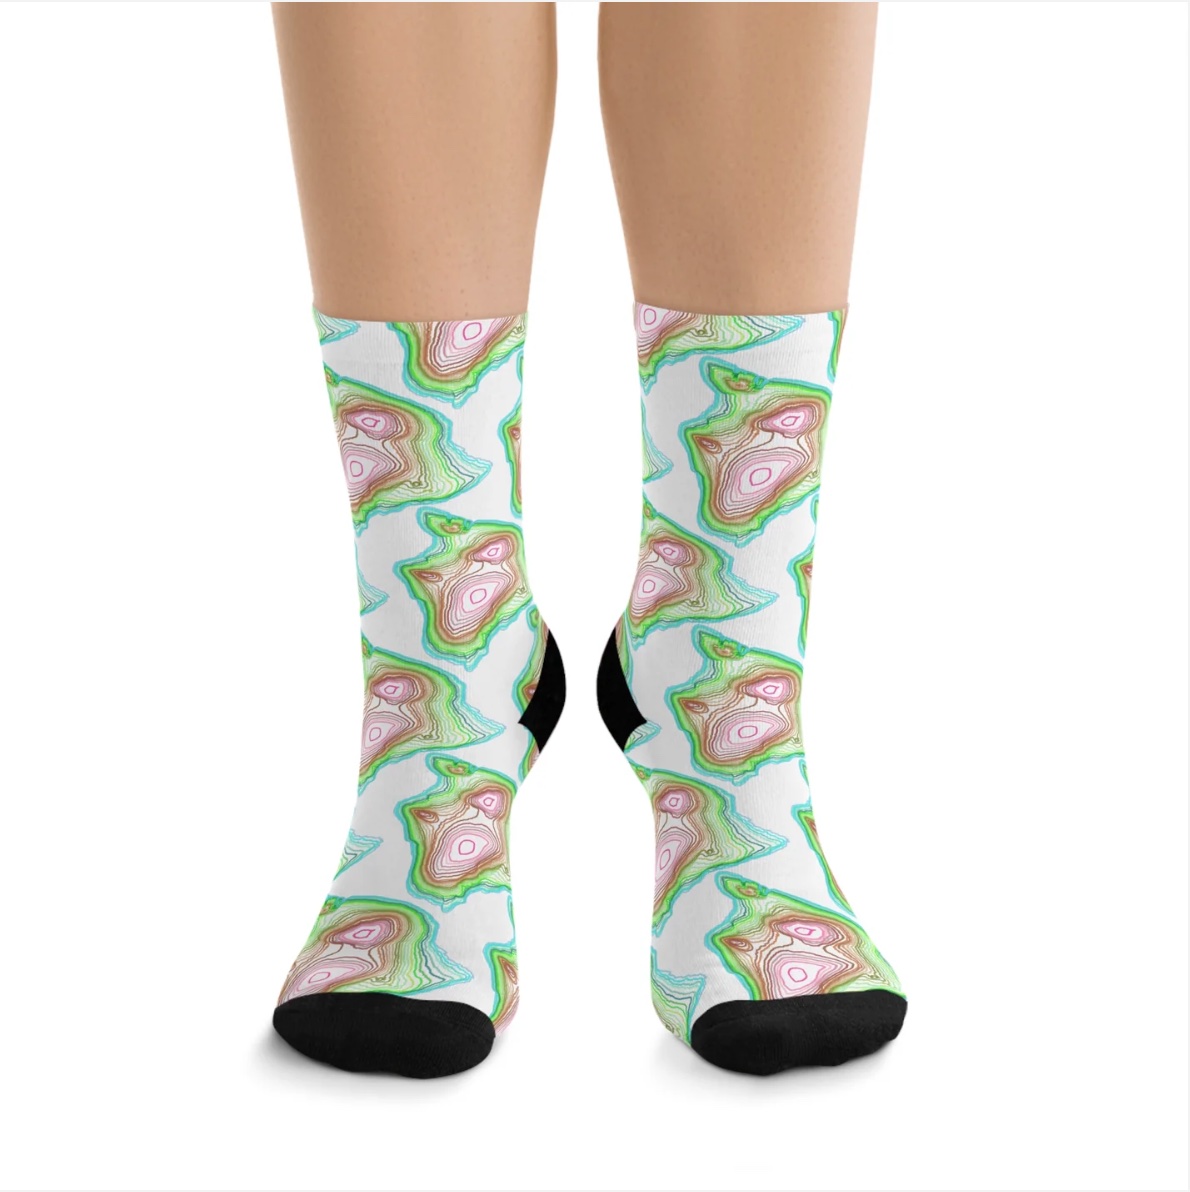 Hawaii Big Island socks